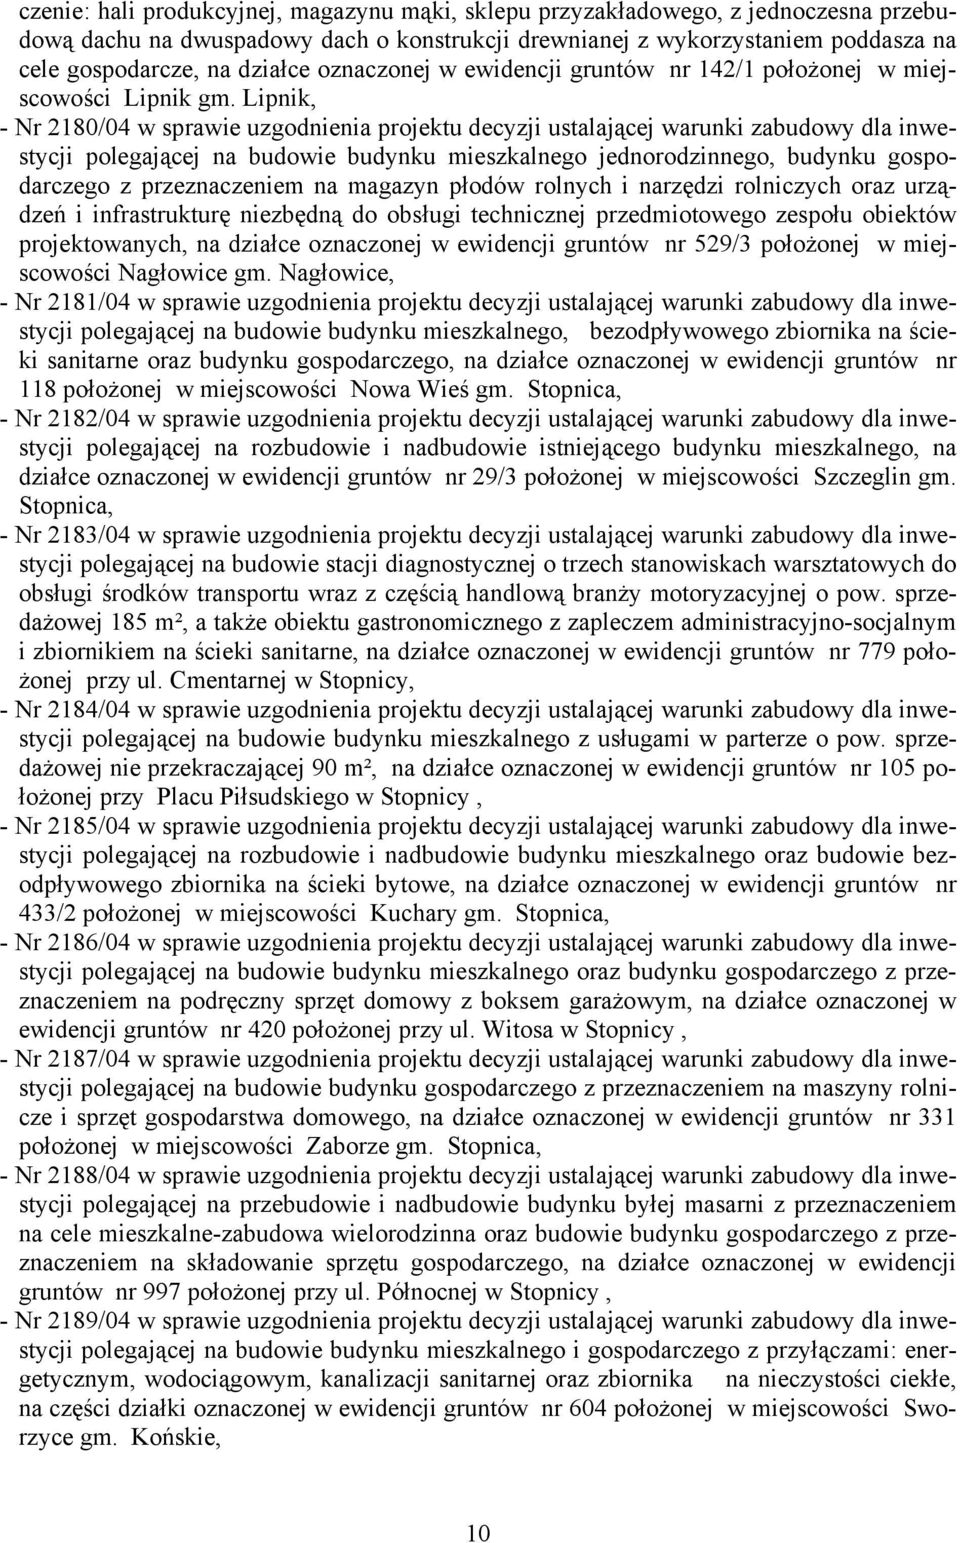 Lipnik, - Nr 2180/04 w sprawie uzgodnienia projektu decyzji ustalającej warunki zabudowy dla inwestycji polegającej na budowie budynku mieszkalnego jednorodzinnego, budynku gospodarczego z